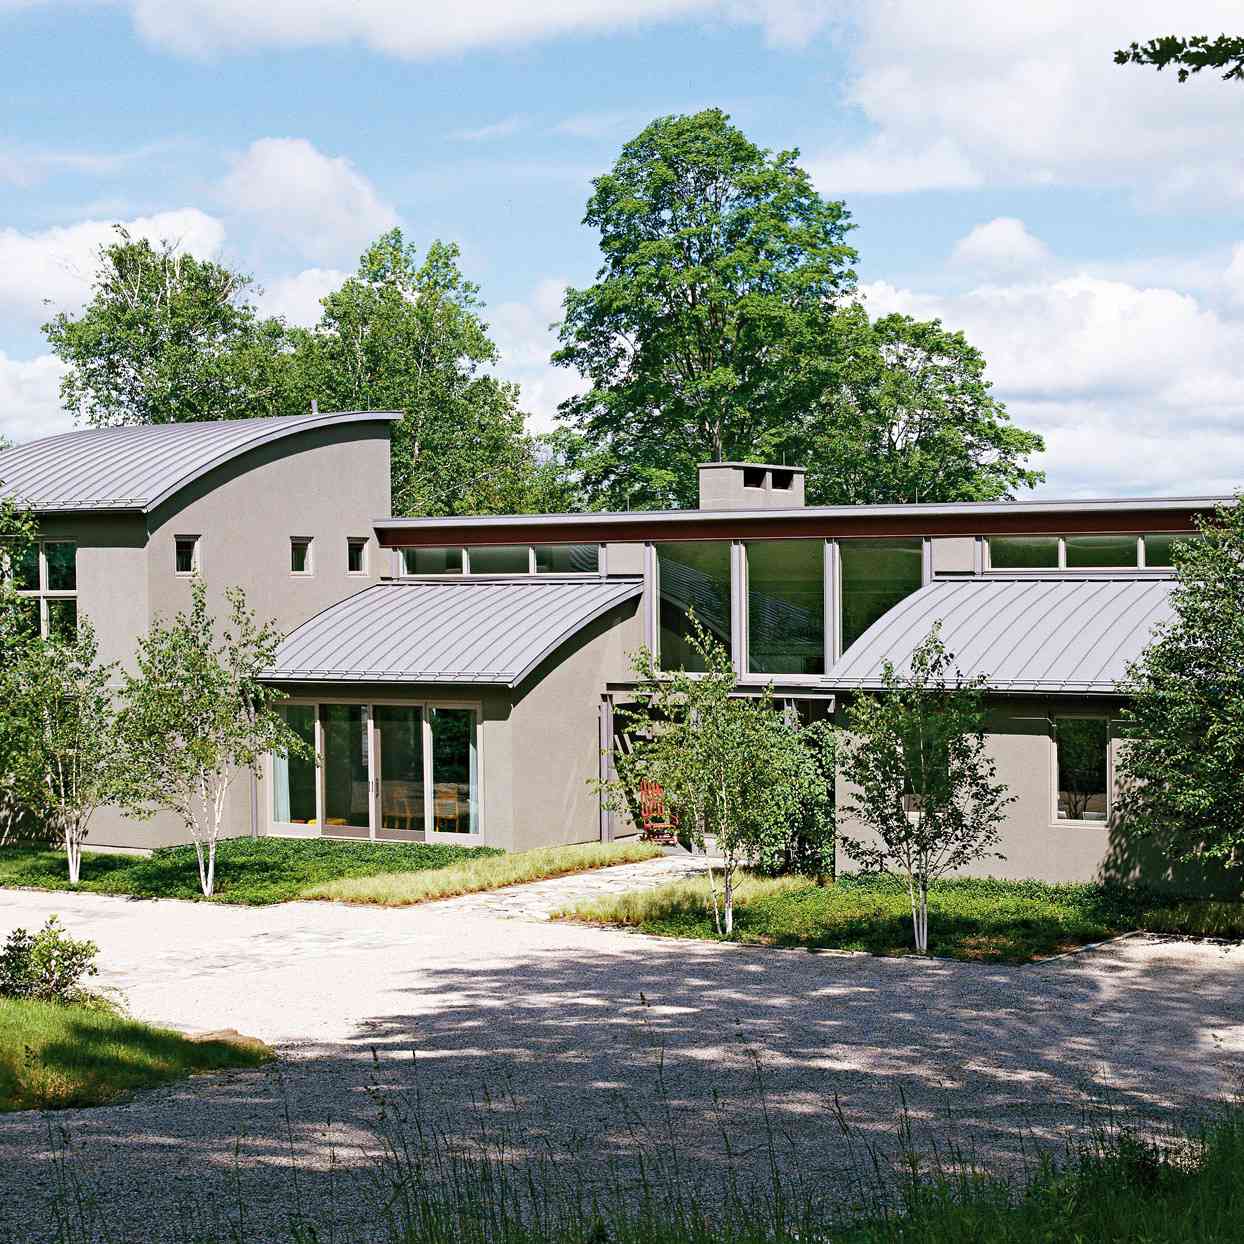 Contemporary Home Design